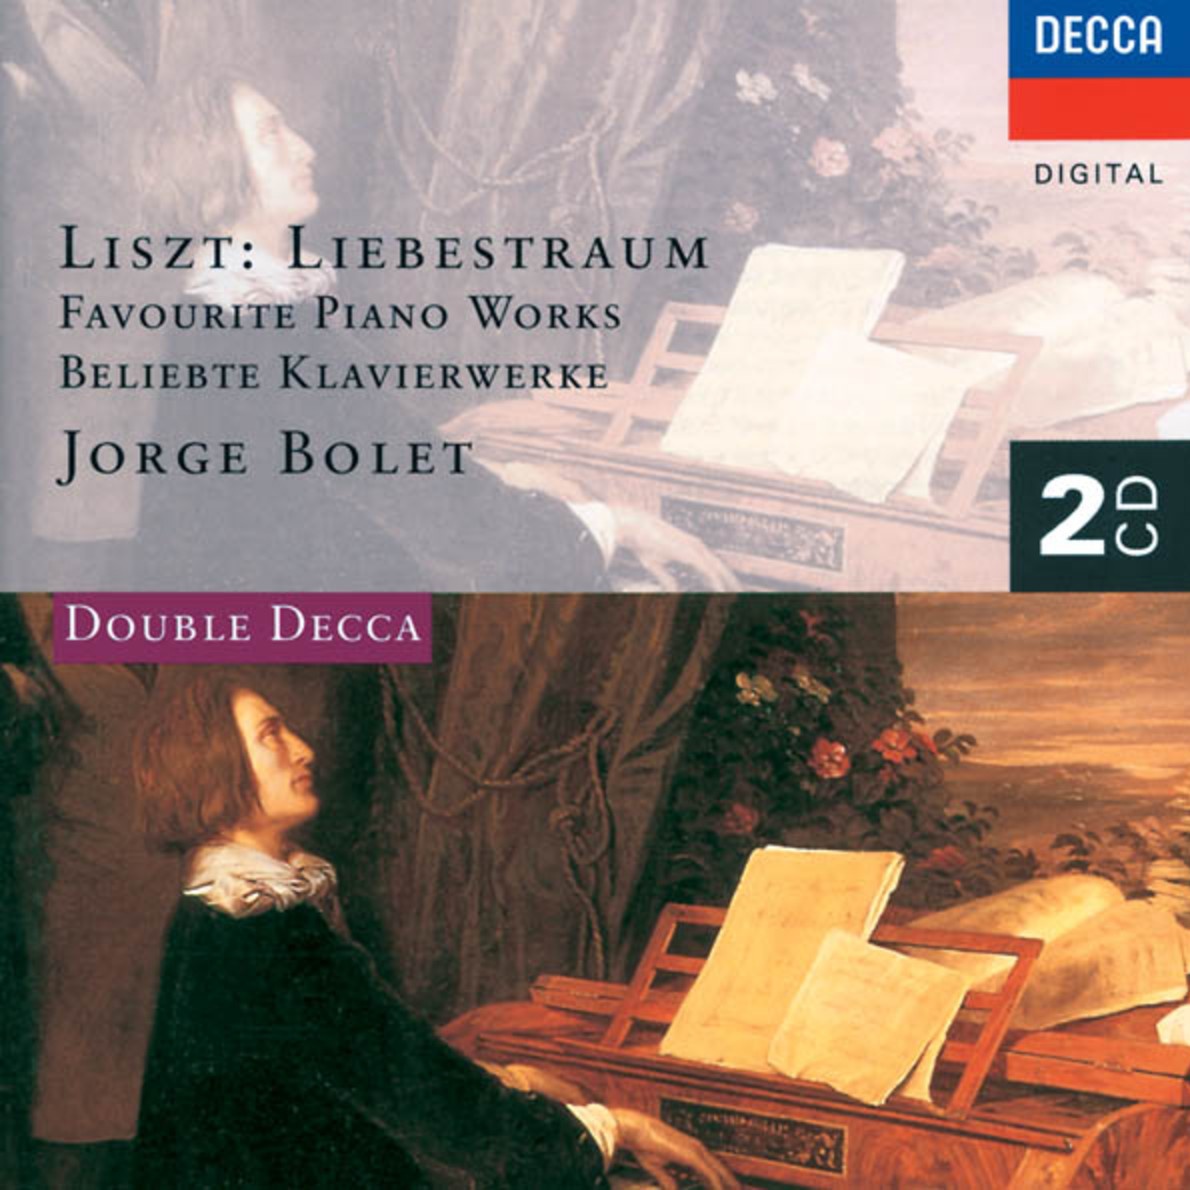 Schubert: Erlkönig, S.558 No.4 Piano transcription after Schubert's D.328